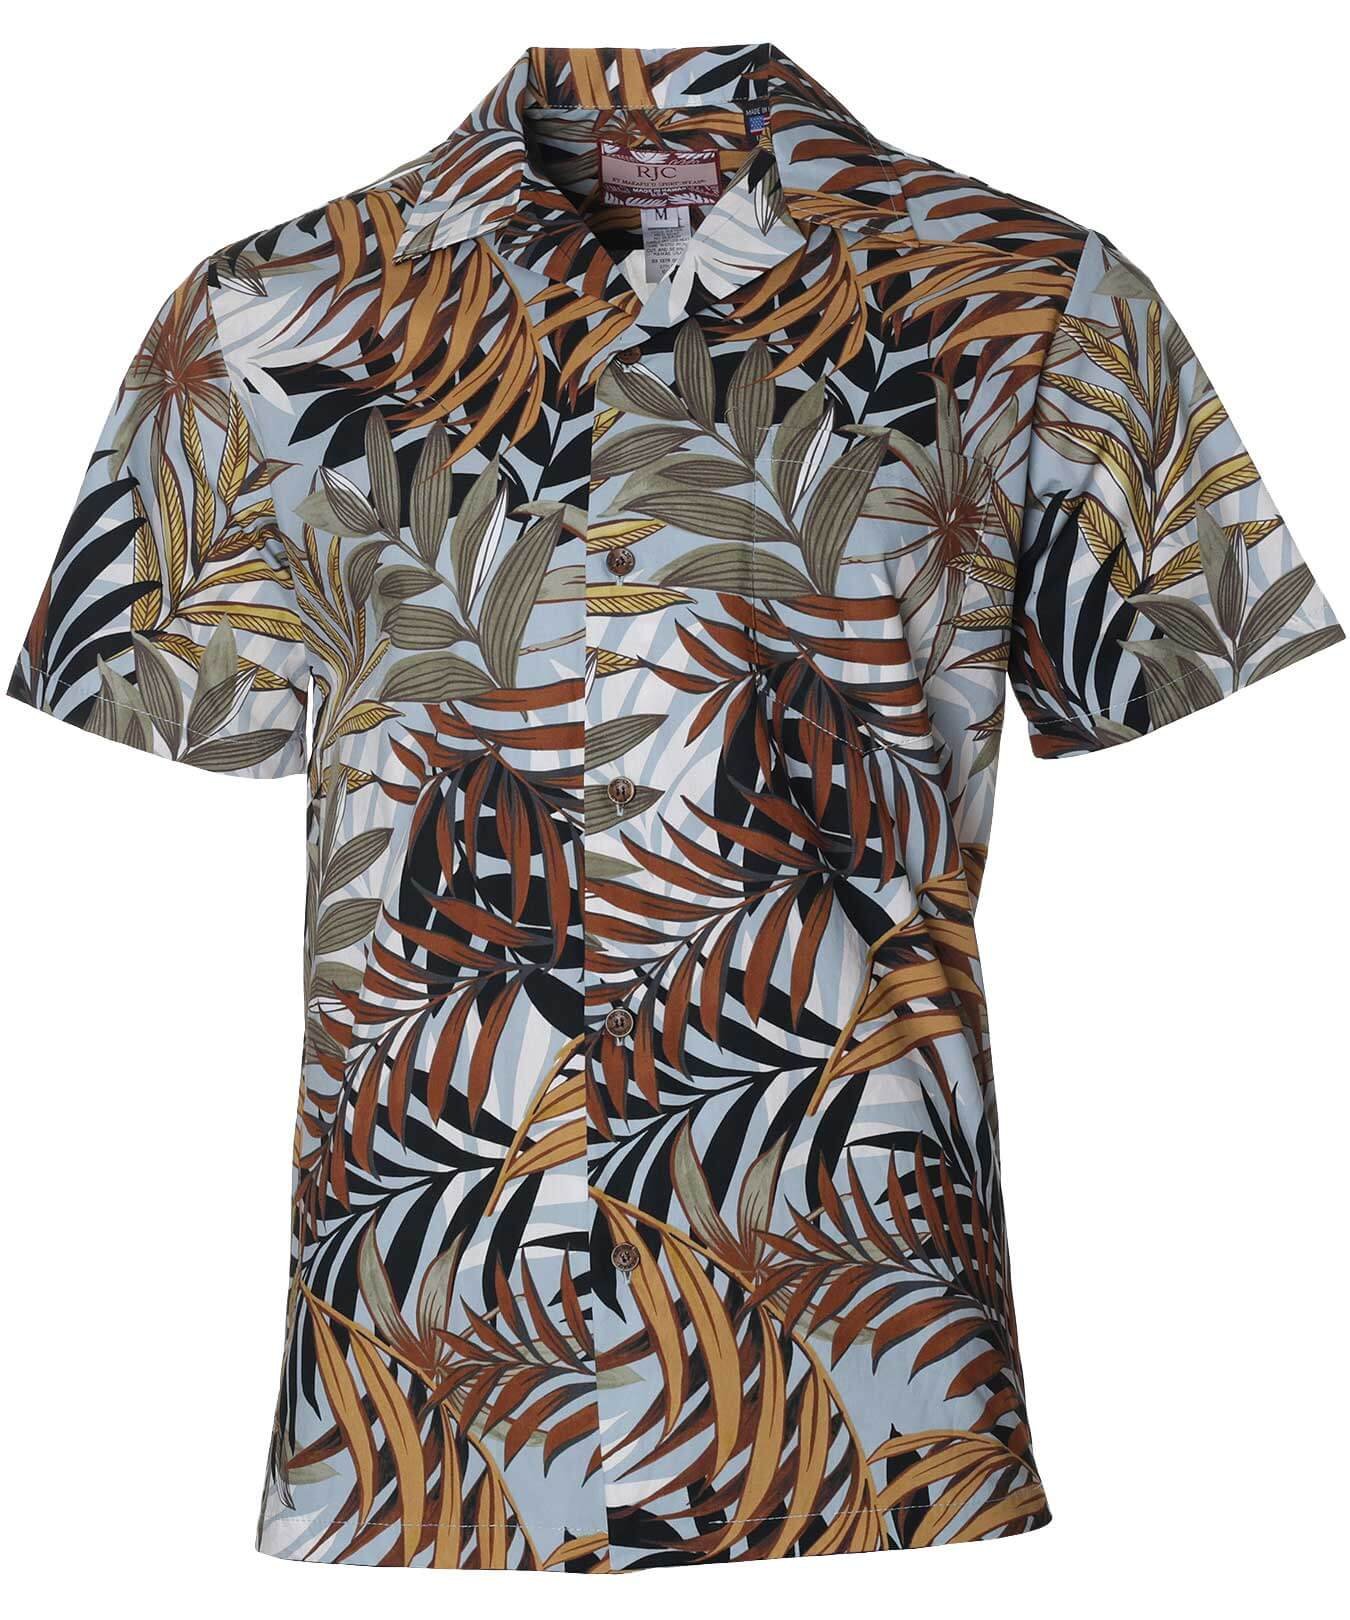 Hauoli Men's Cotton Aloha Shirt Brown